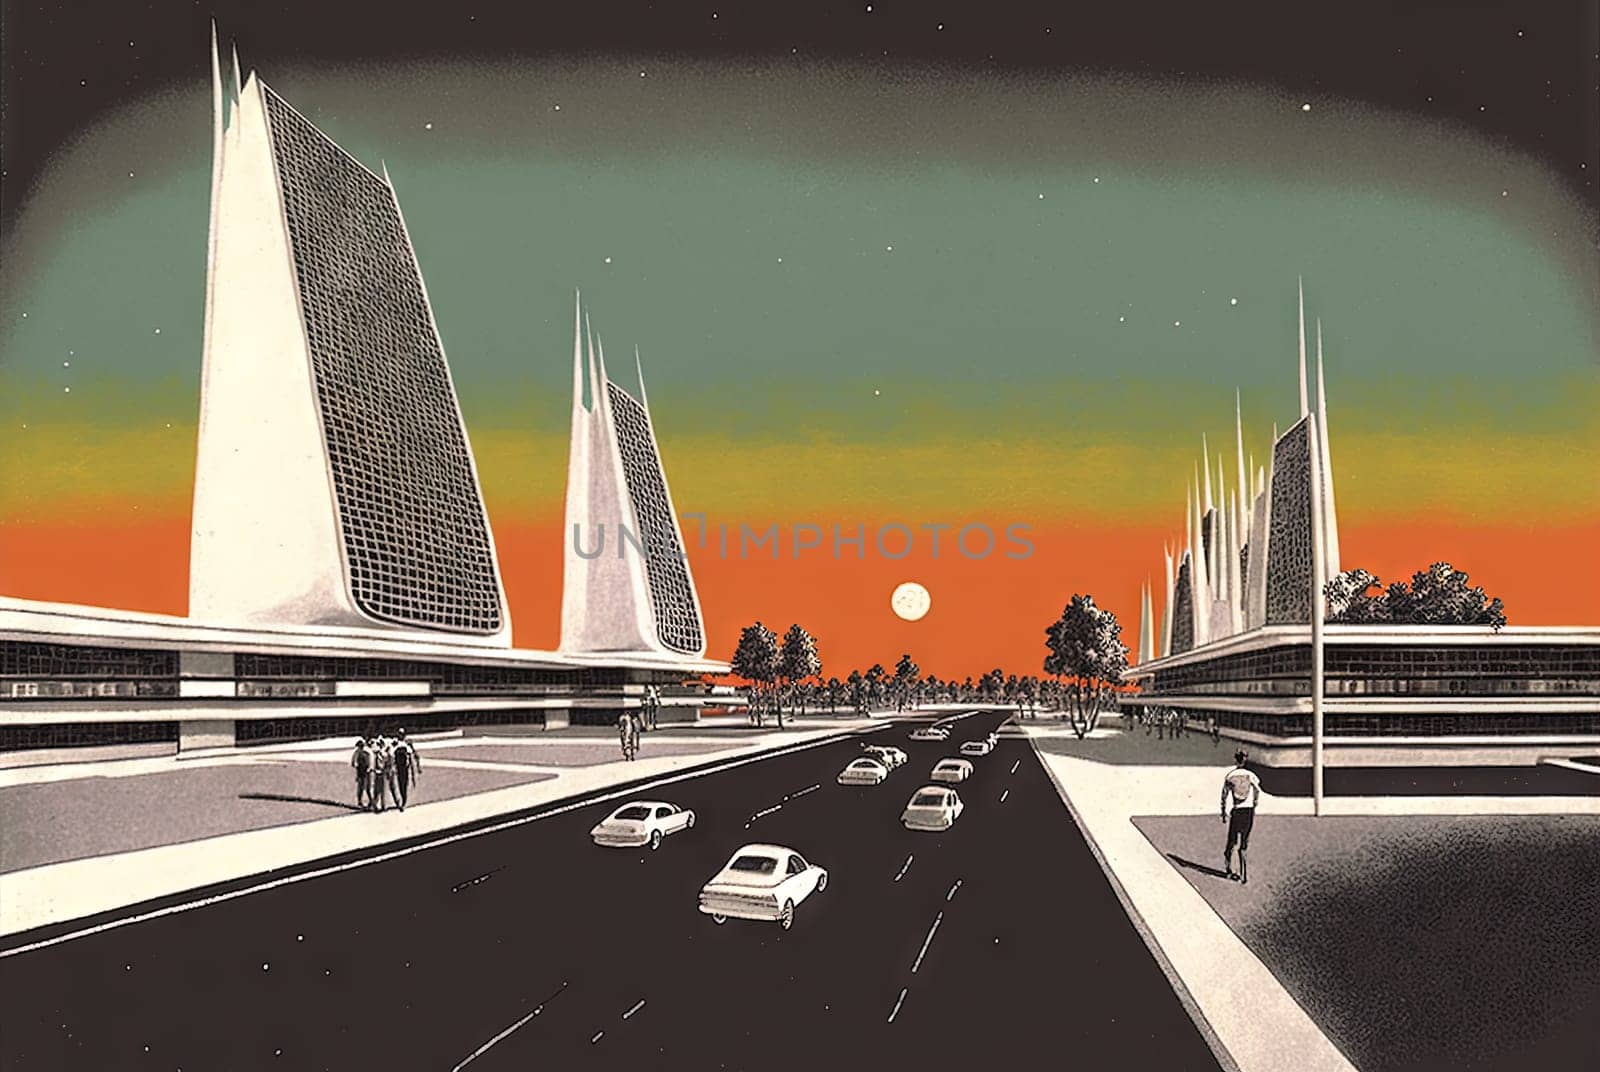 Retrofuturistic landscape in 80s sci-fi style. Retro science fiction scene with futuristic buildings. Generated AI